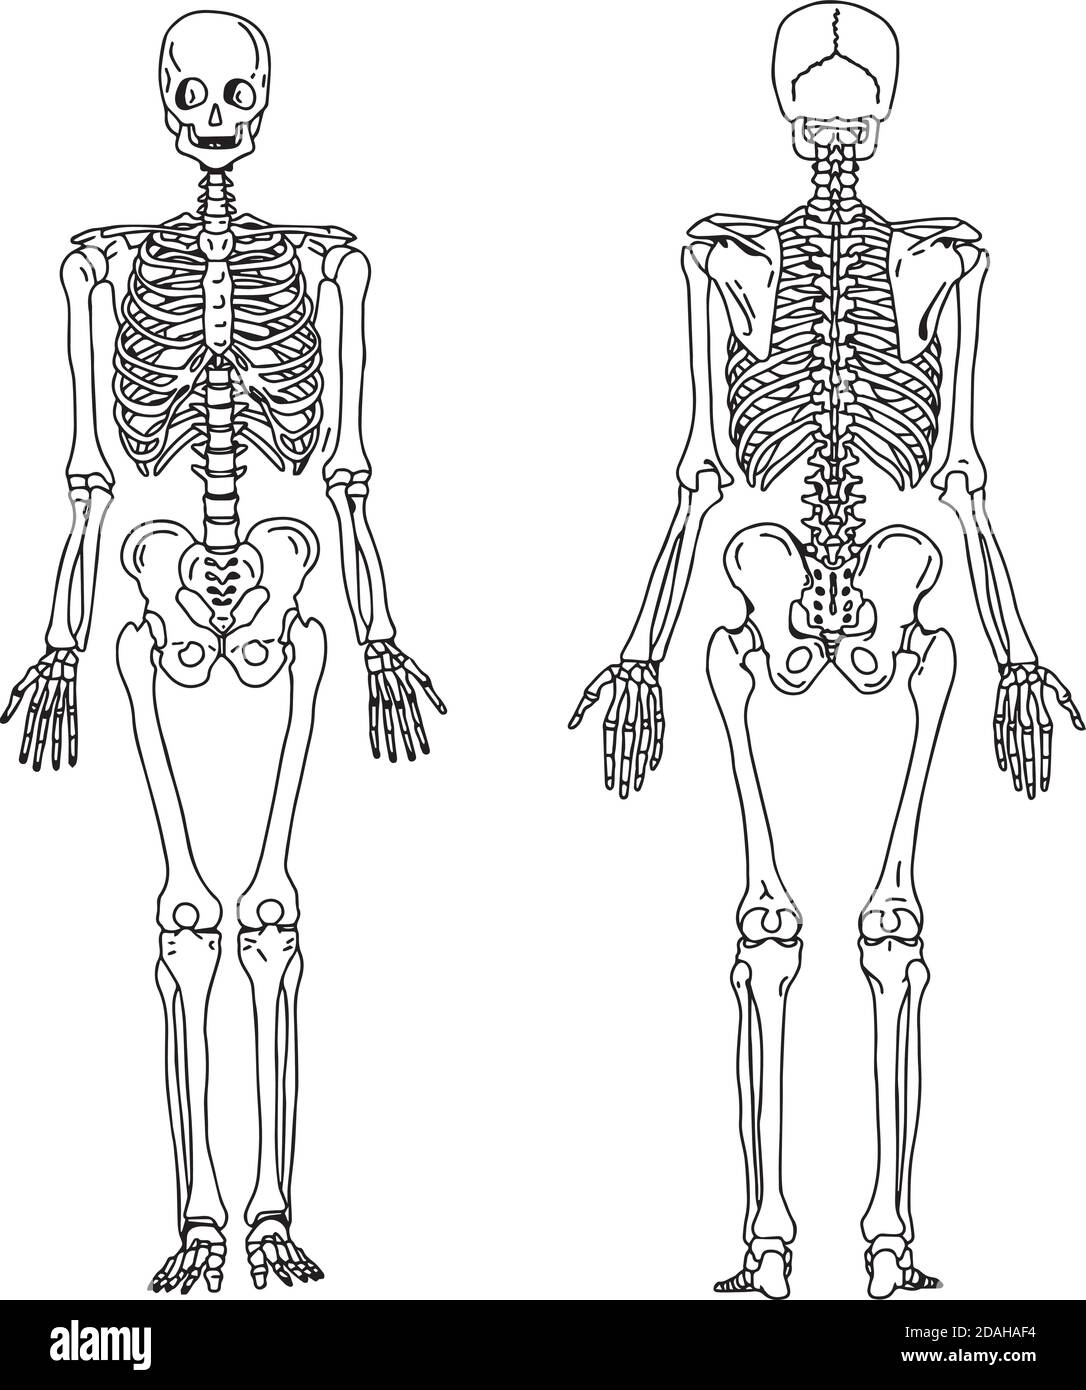 illustration vecteur main dessiner des dessins de squelette humain à partir de la vue postérieure et antérieure, anatomie du système osseux humain Illustration de Vecteur